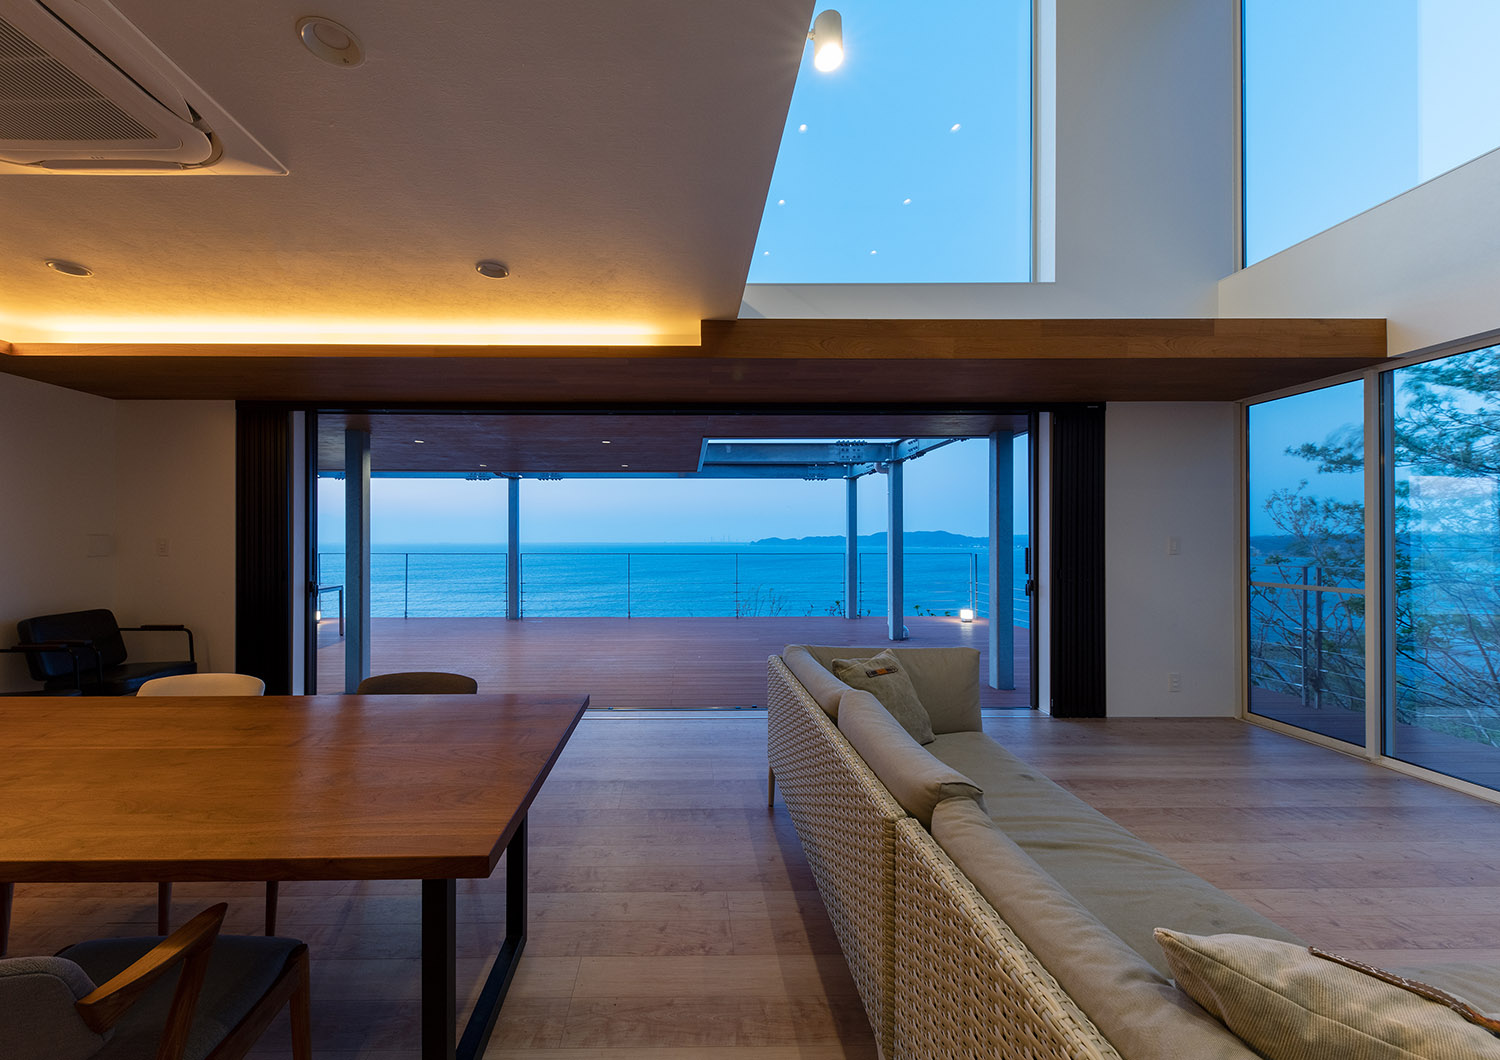 天井に間接照明を取り付けた、窓から海が見える高級感のあるLDK・デザイン住宅